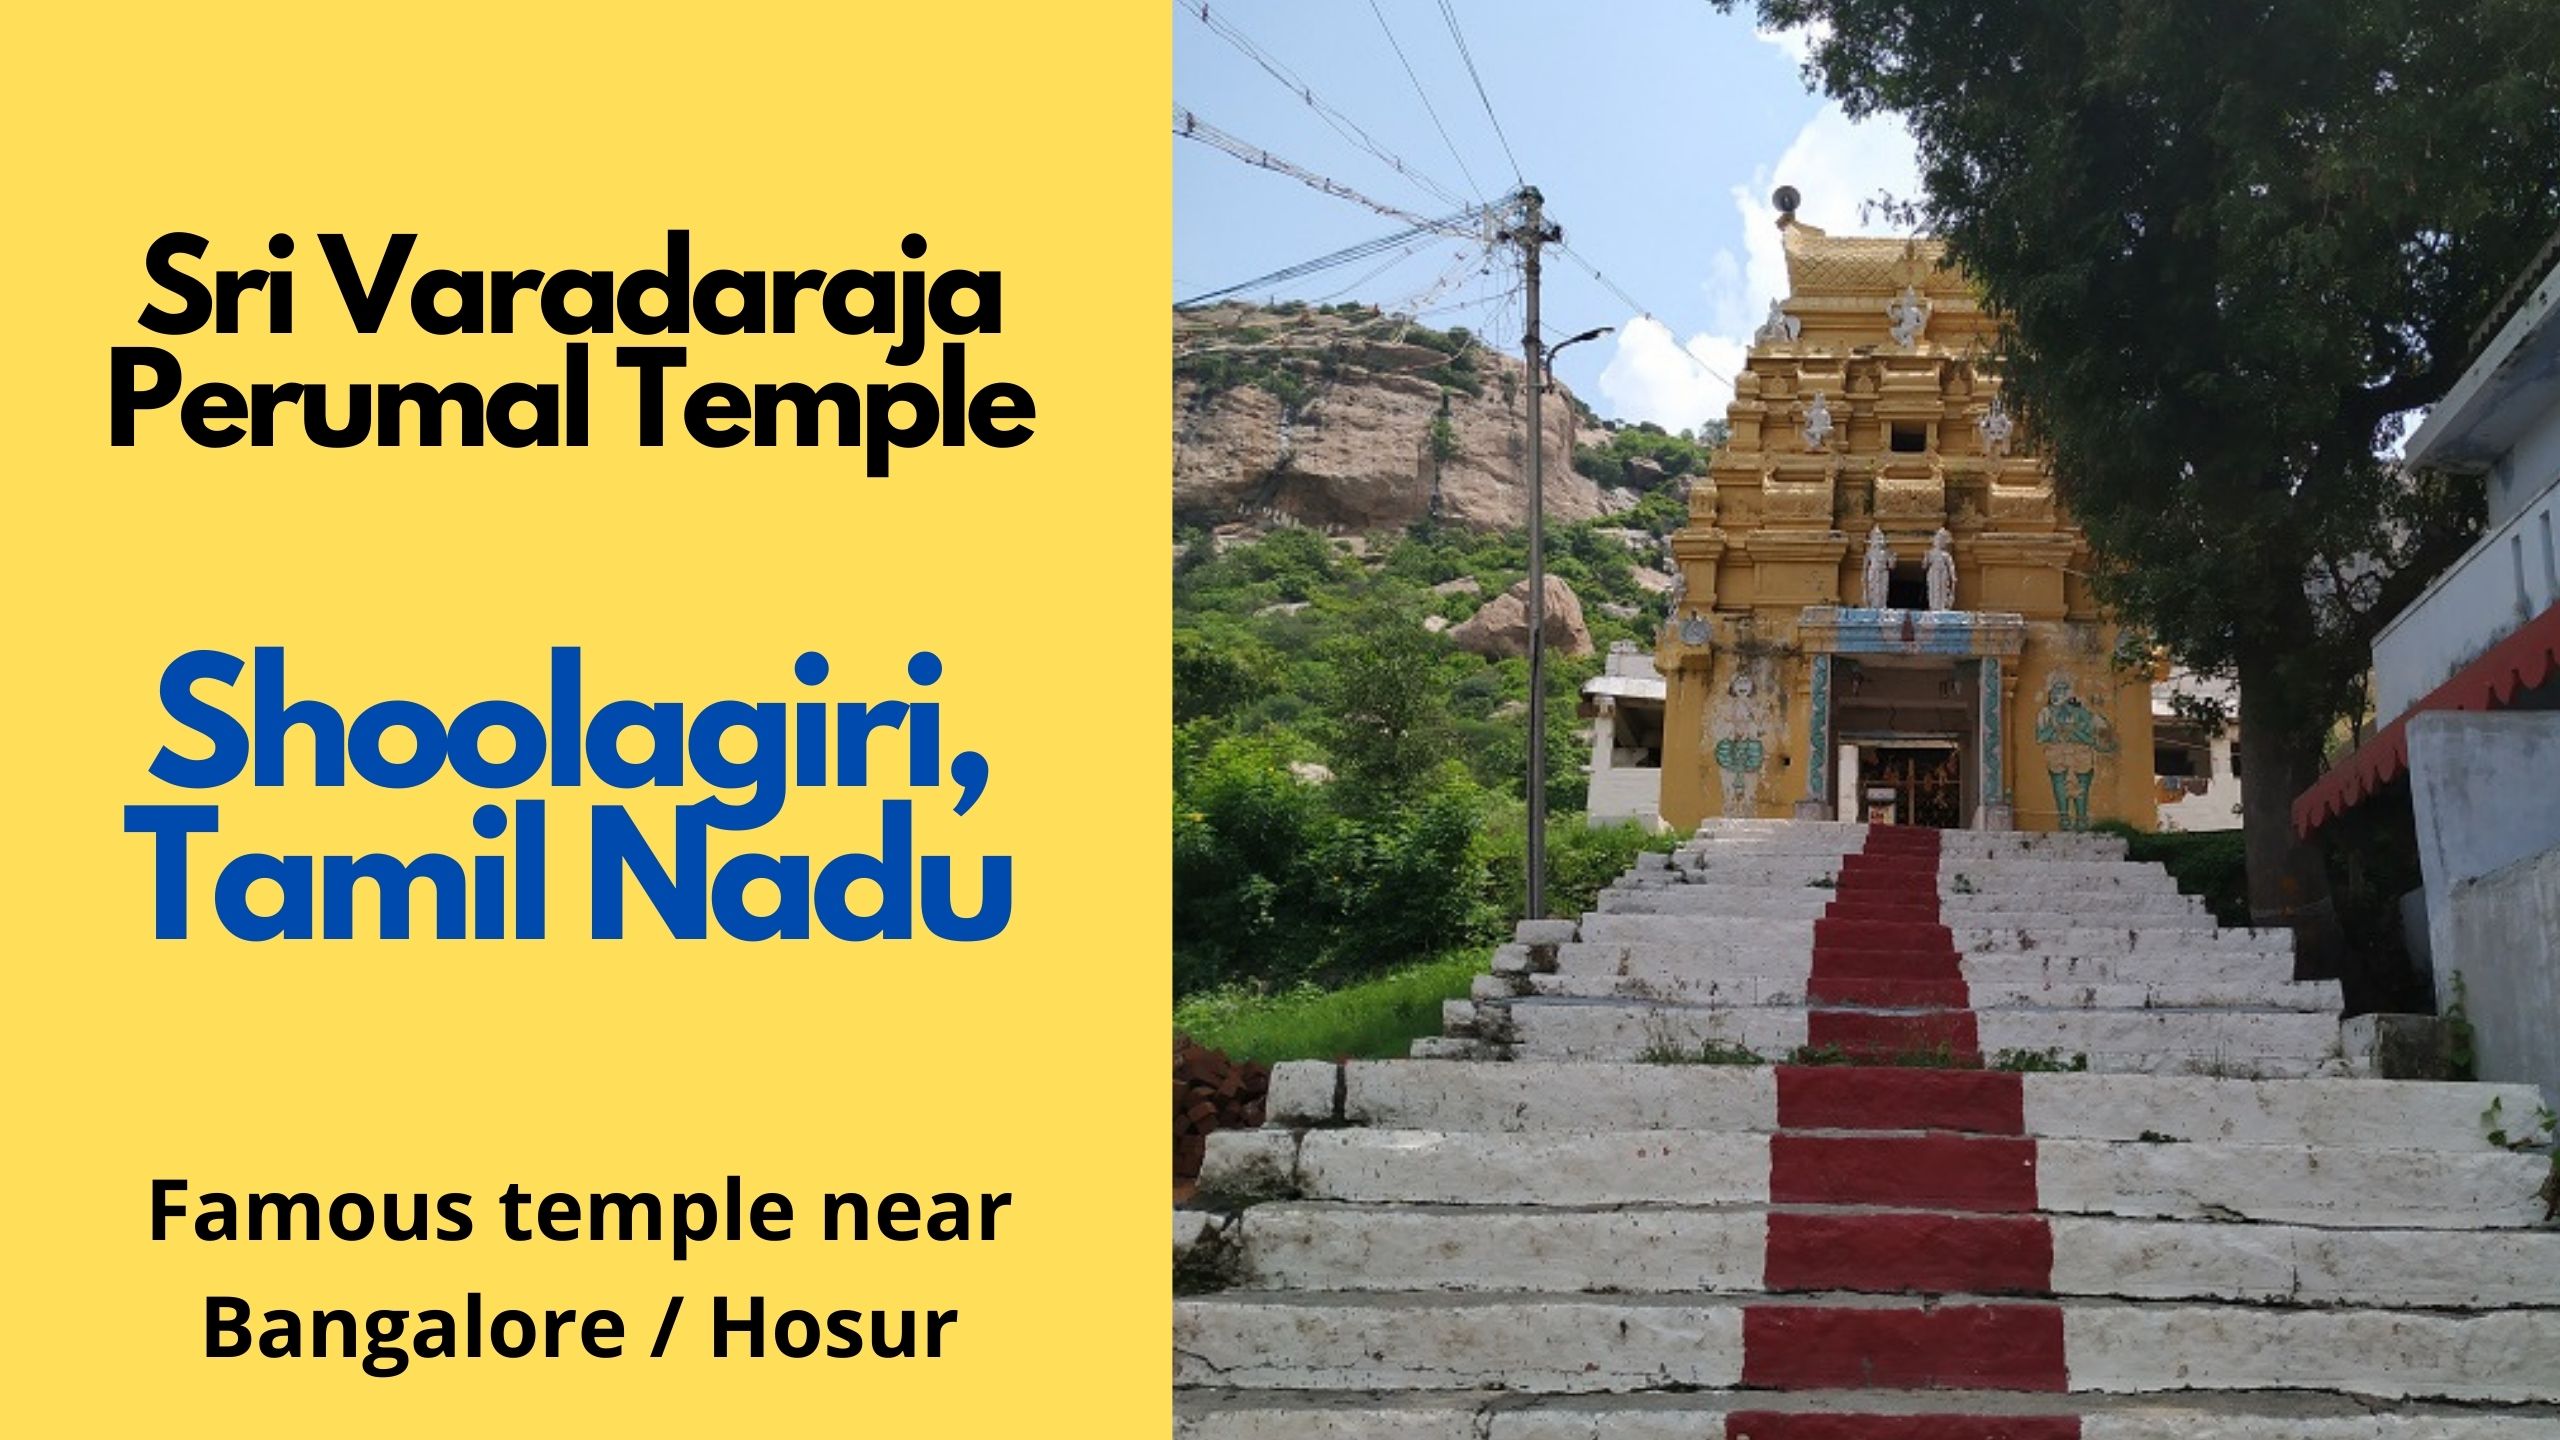 Sri Varadaraja Perumal Temple, Shoolagiri, Tamil Nadu